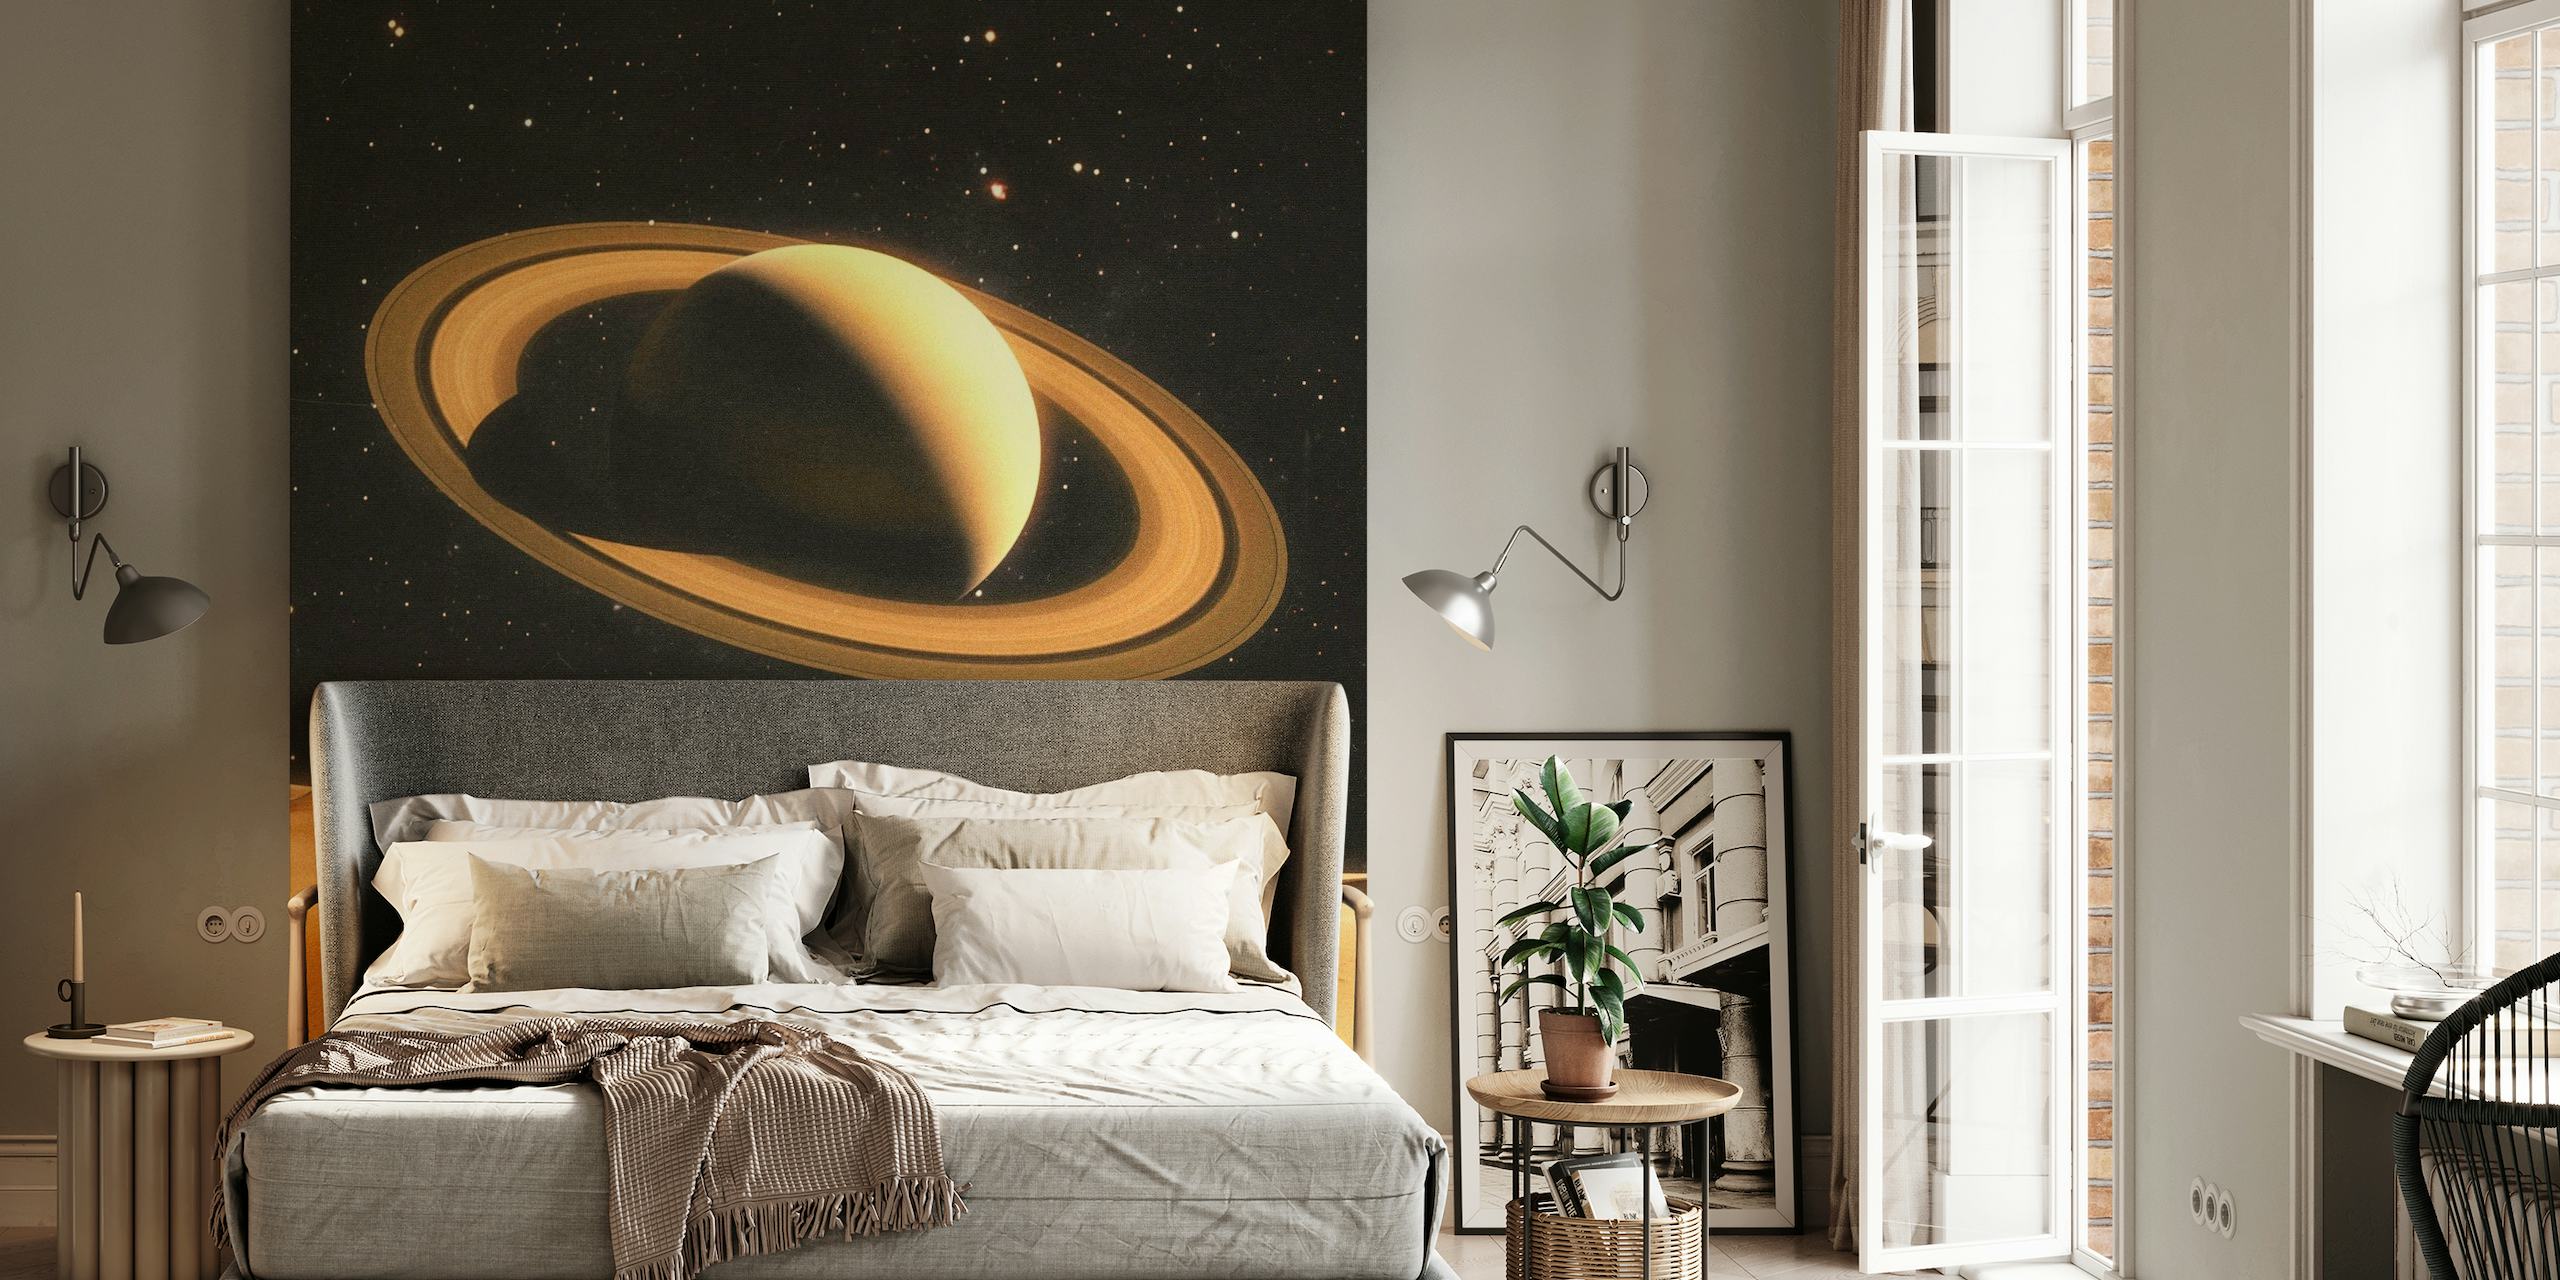 Carta da parati raffigurante due persone su un pianeta desertico con Saturno sullo sfondo